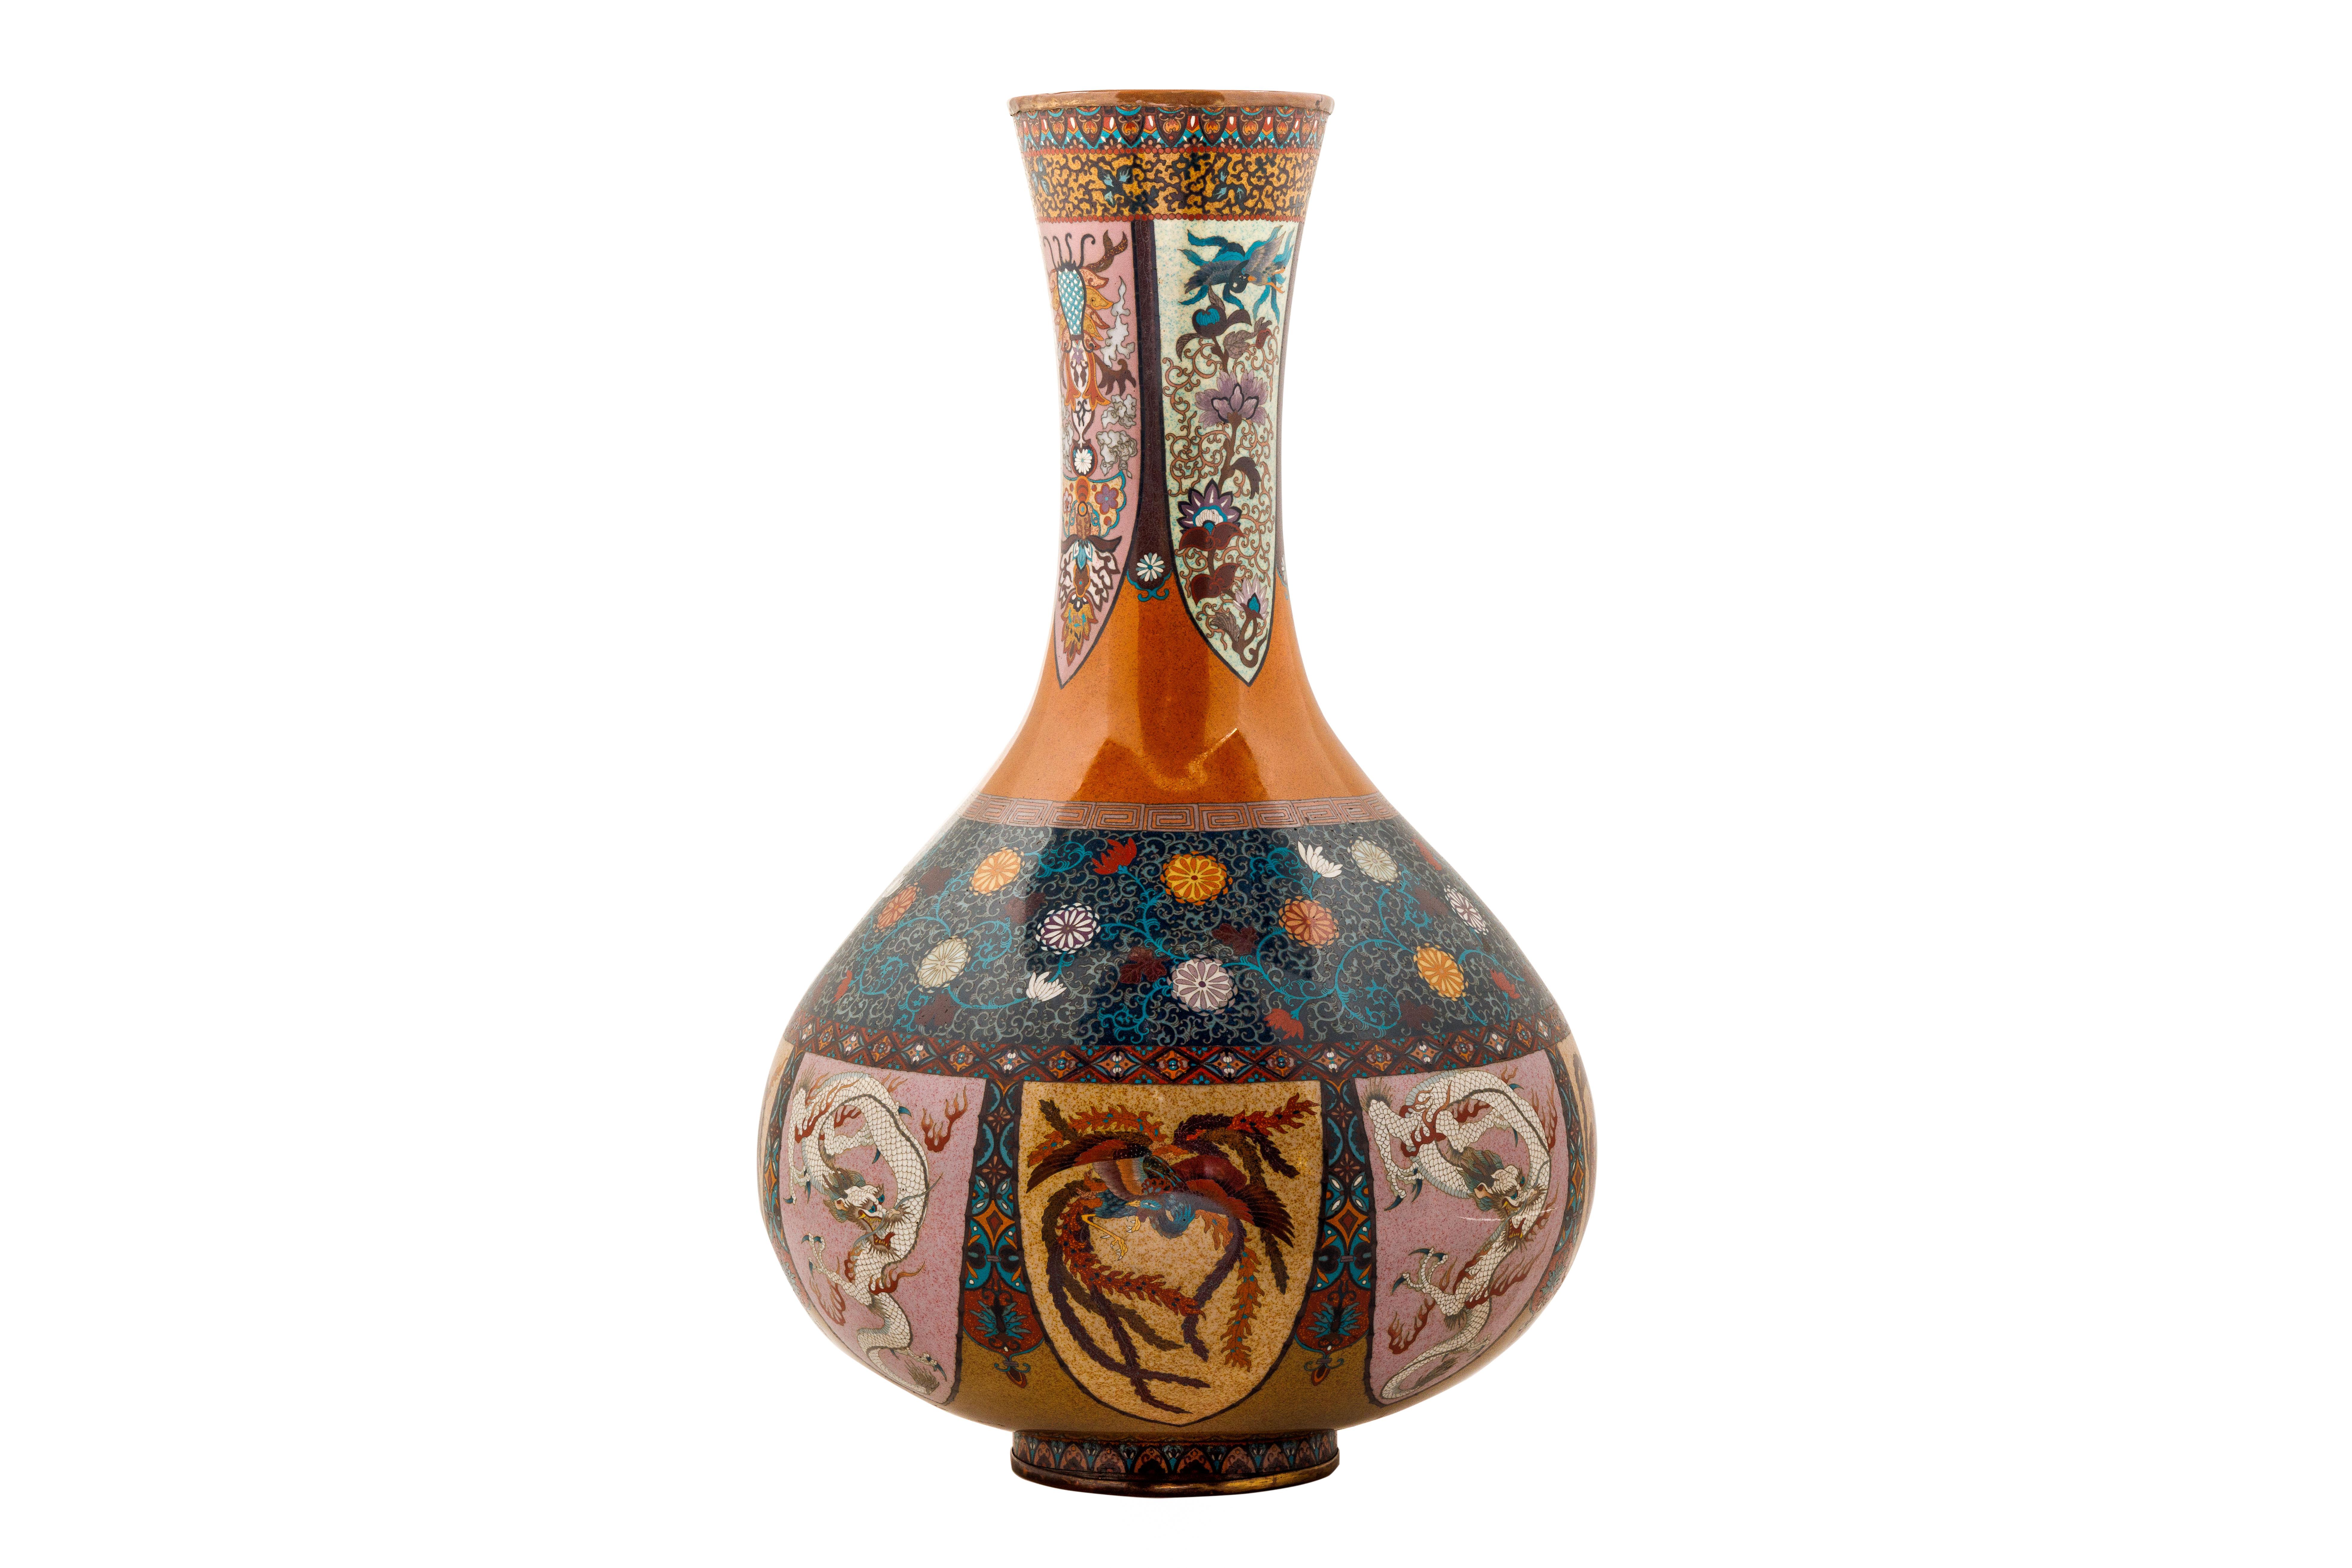 Paire de vases en émail cloisonné attribués à Honda Yasaburo, 19e siècle.

Décorés de riches couleurs d'émail orange et vert, ces vases sont ornés d'oiseaux, de phénix, de dragons, de fleurs de lotus et de paulownia et du motif traditionnel